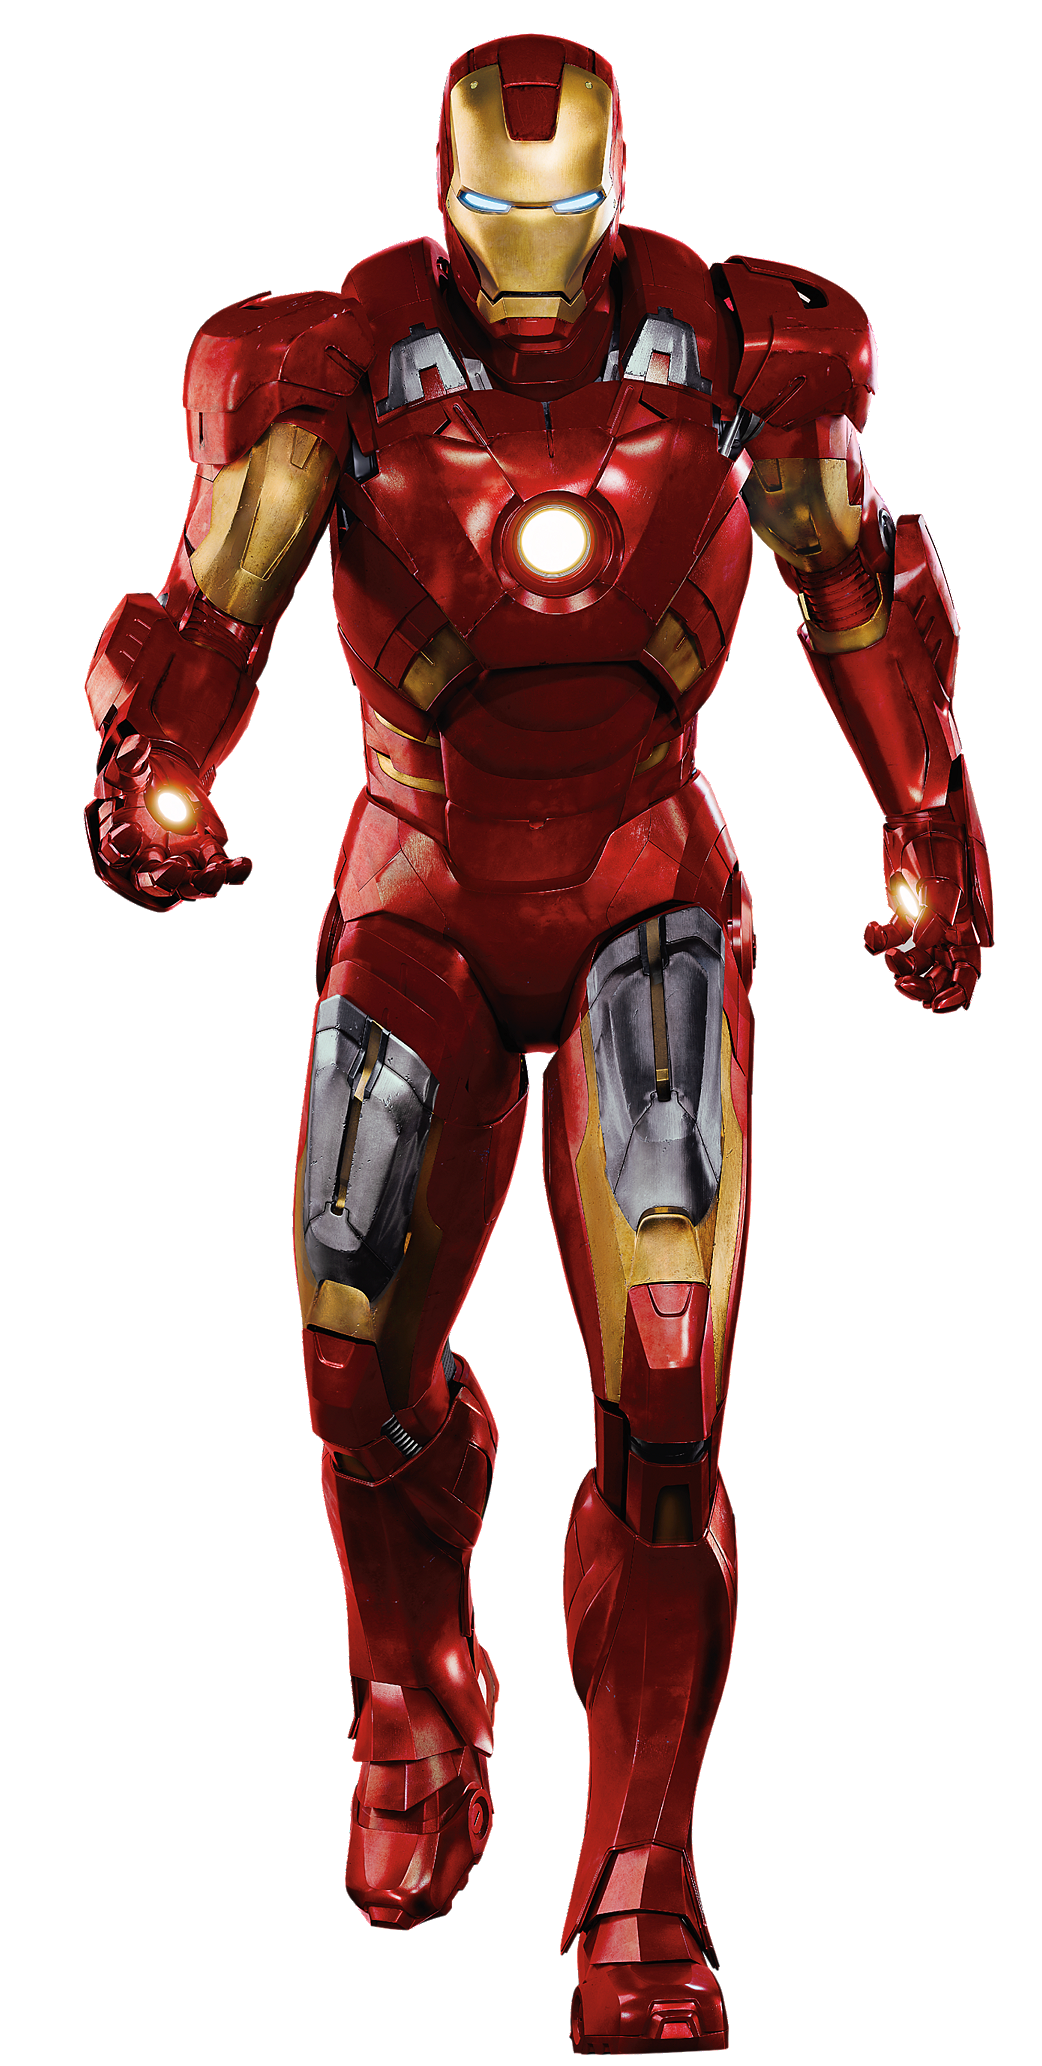 Iron Man Png Image PNG Image